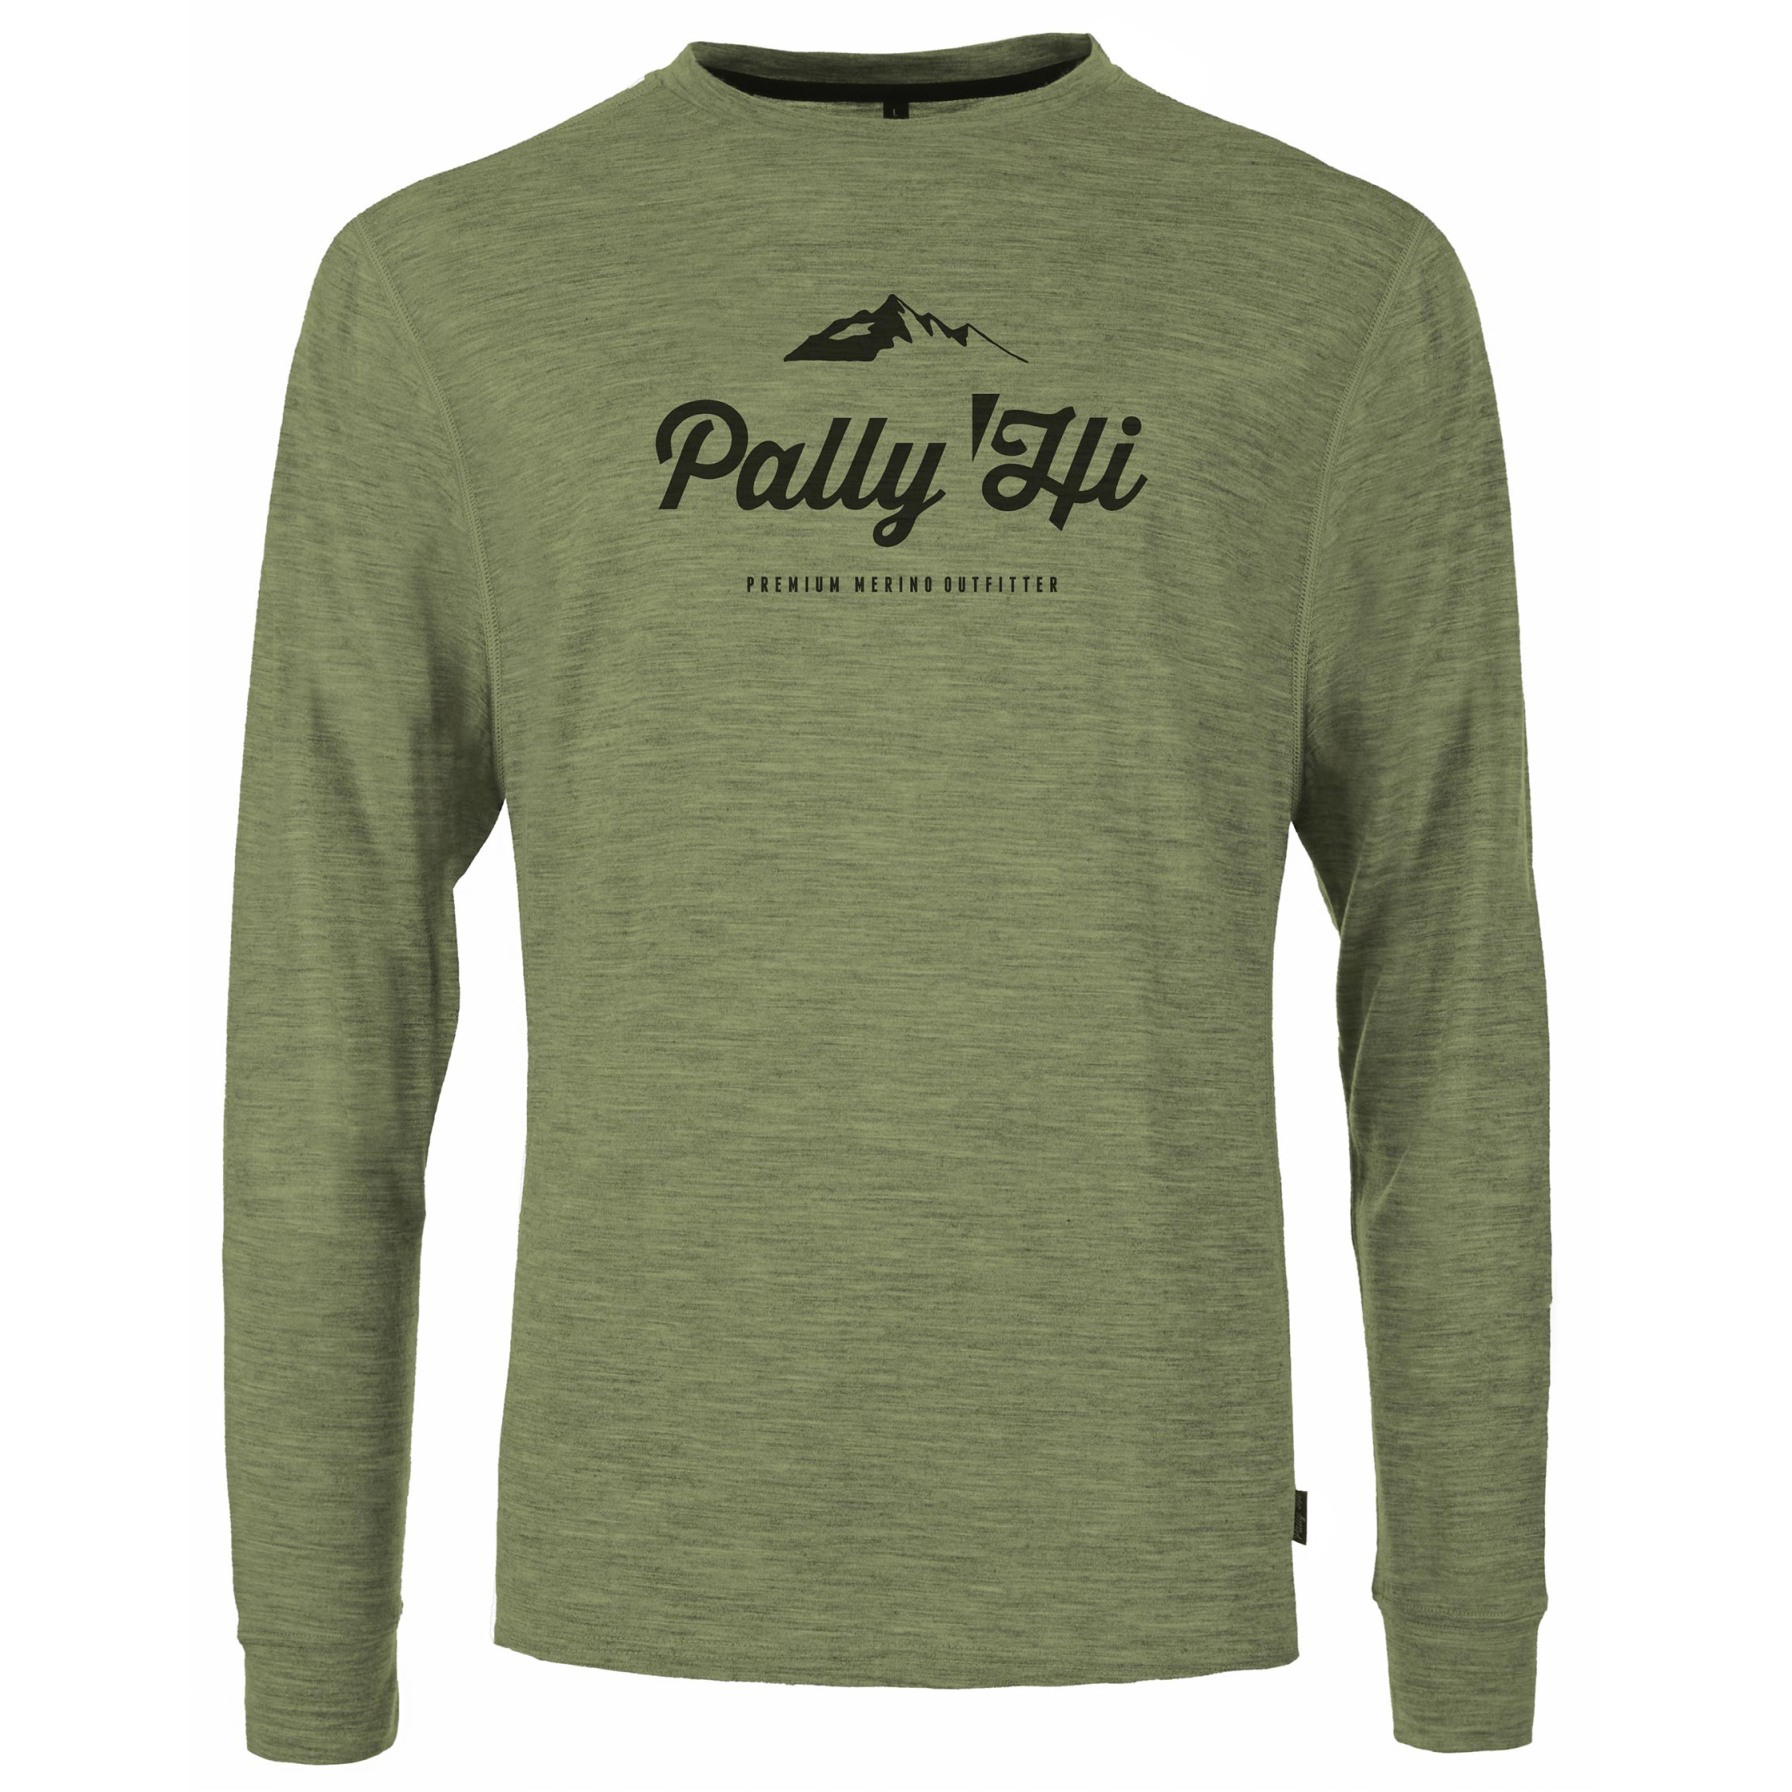 Produktbild von Pally&#039;Hi Classic Peak Logo Langarm Shirt Herren - freckled pine